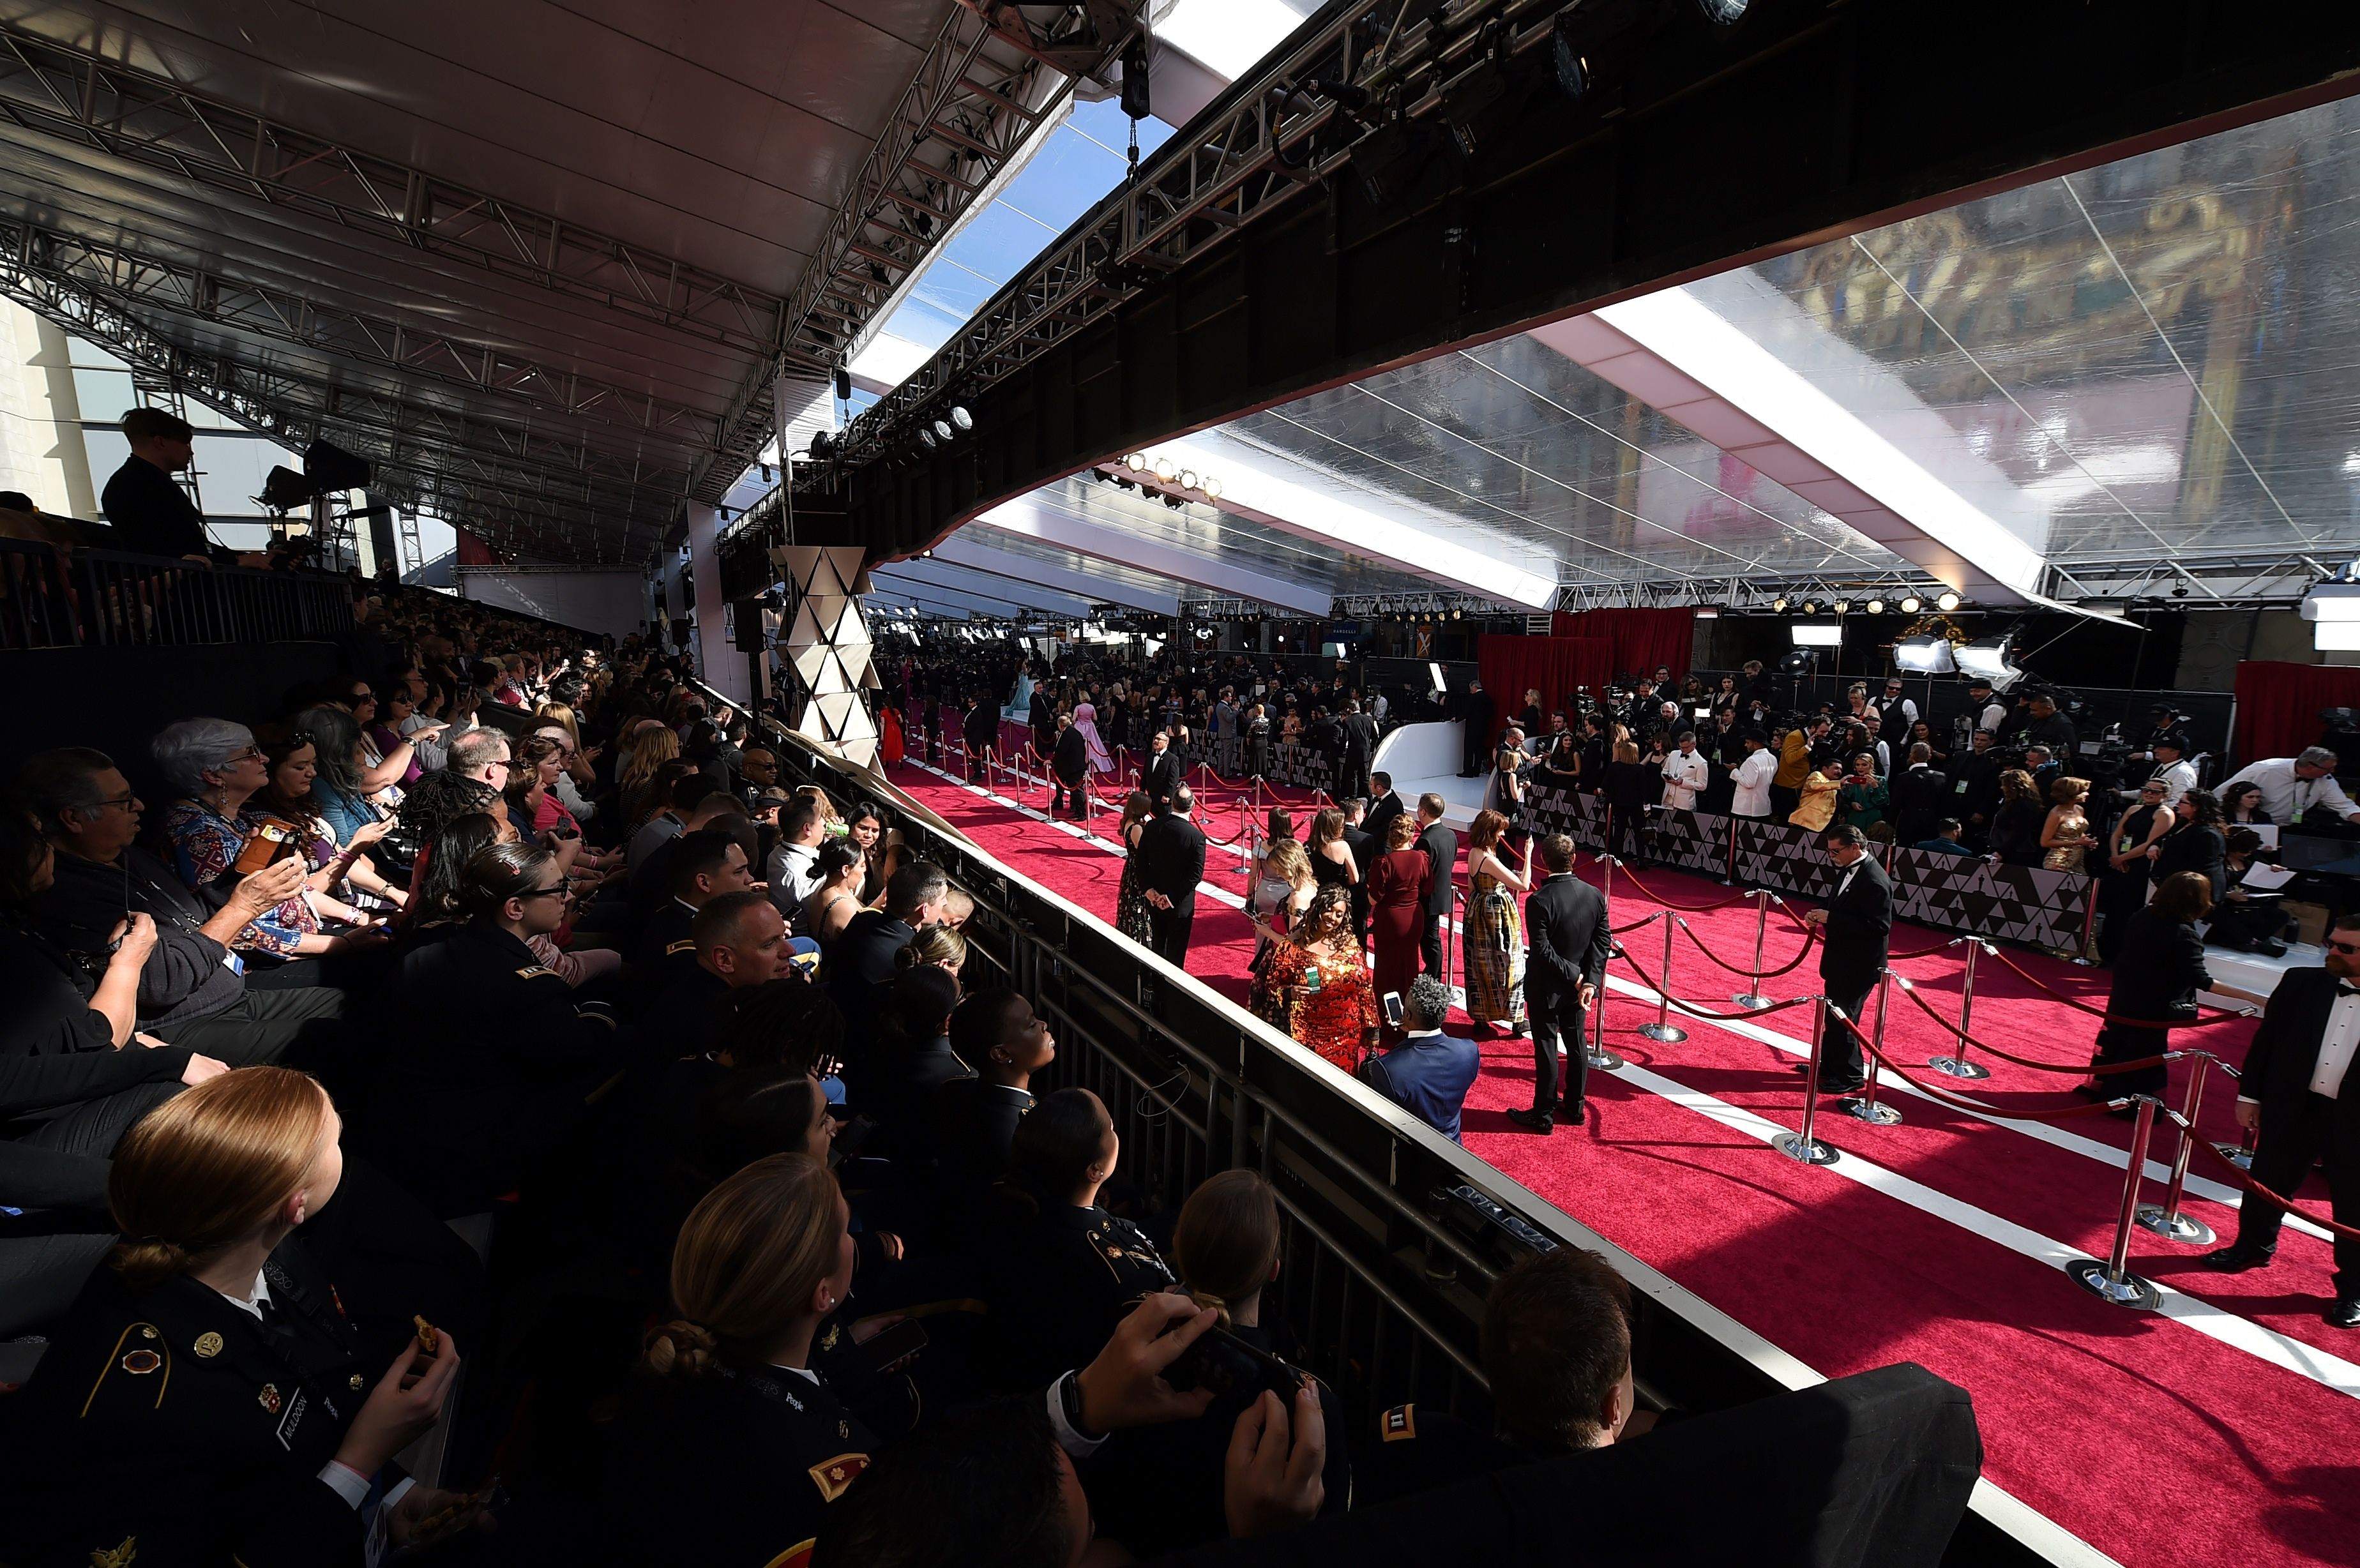 Vista general de la alfombra roja en el Teatro Dolby de Los Ángeles, donde se celebra la 91 edición de los premios Óscar. (Foto Prensa Libre: AFP).